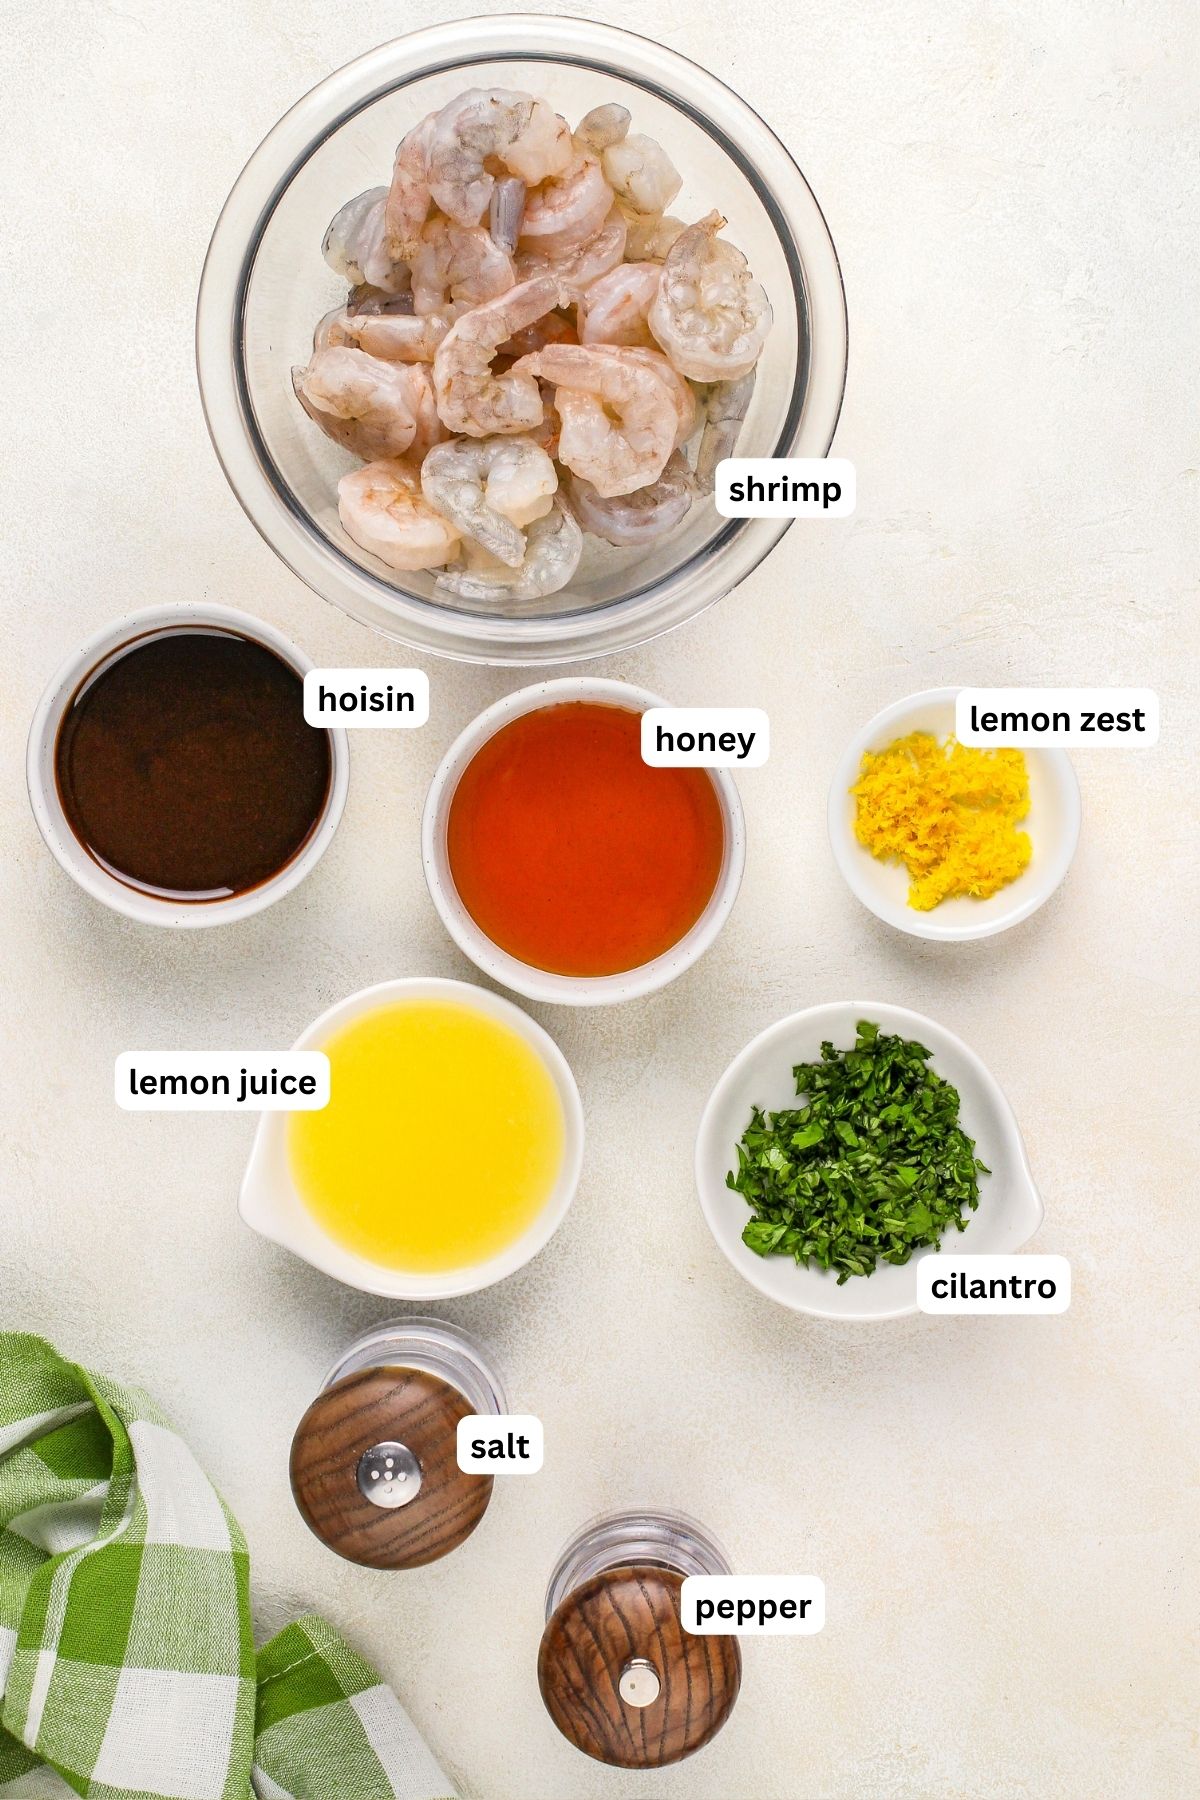 Ingredients arranged in bowls for grilled shrimp skewers recipe. From top to bottom: shrimp, hoisin sauce, honey, lemon zest, lemon juice, cilantro, salt and pepper.